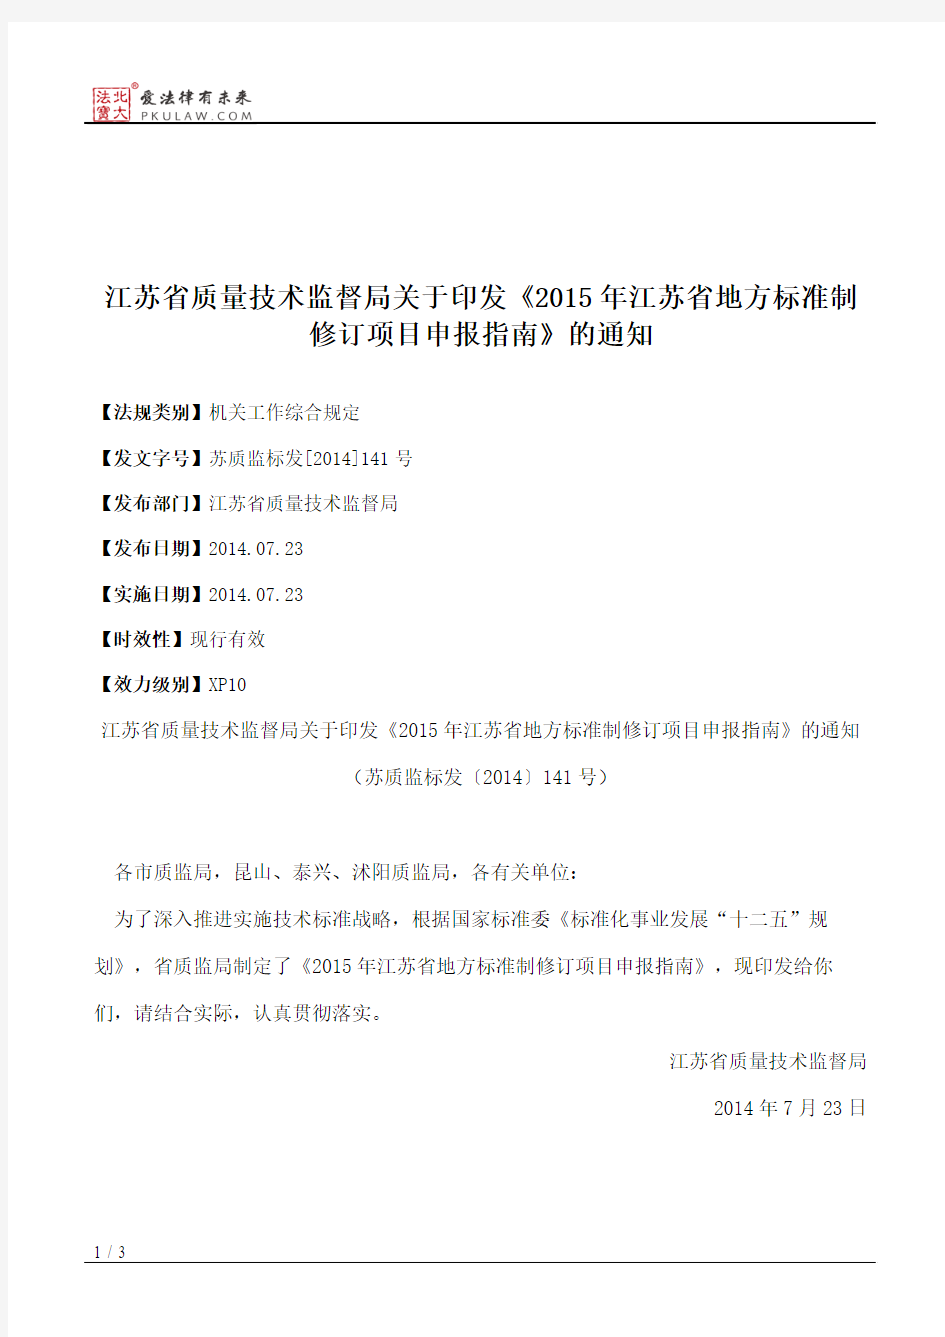 江苏省质量技术监督局关于印发《2015年江苏省地方标准制修订项目